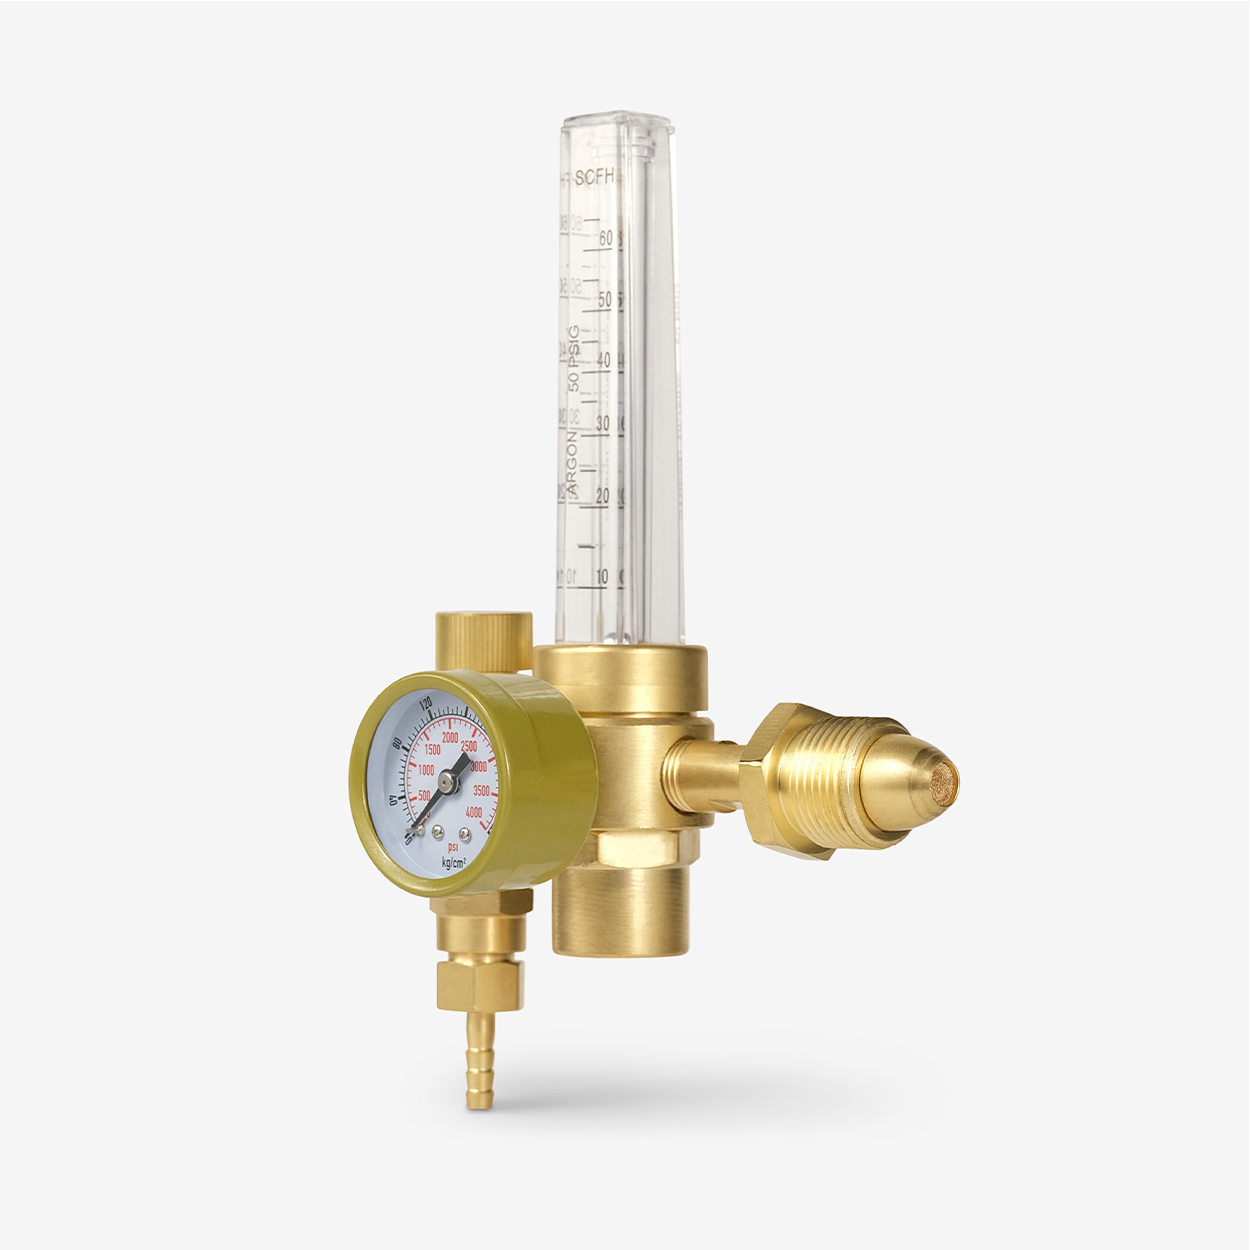  Argon CO2 Regulator - Welding Gas Flowmeter For TIG